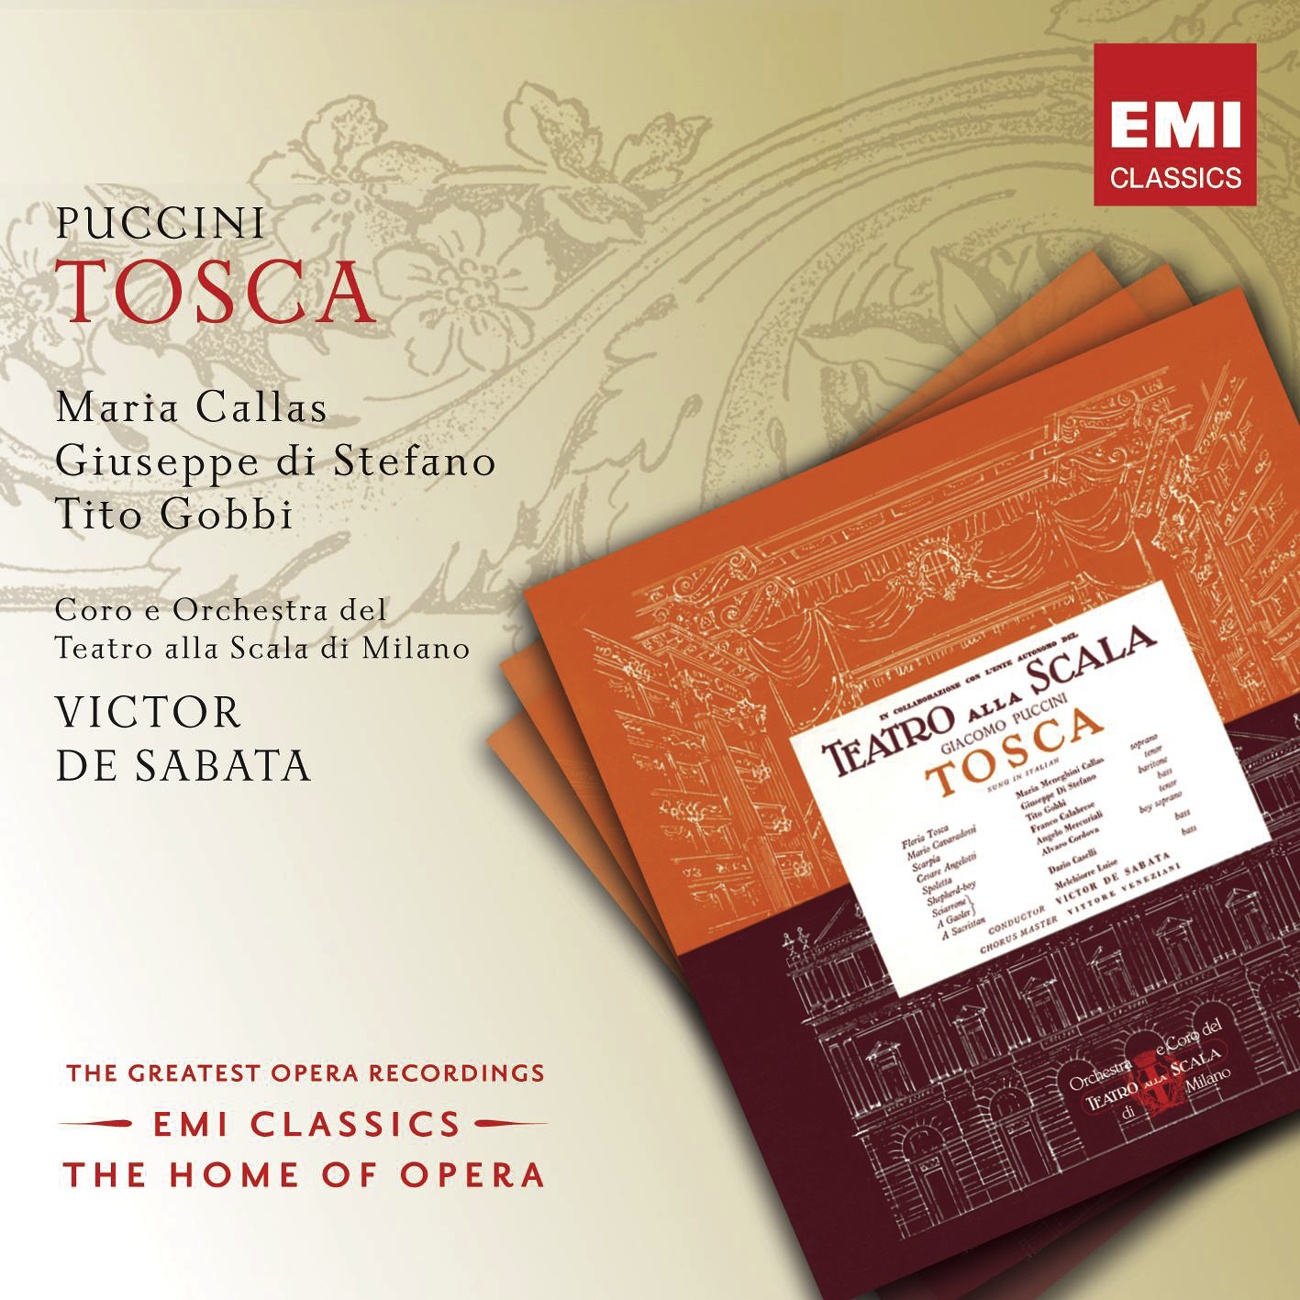 Tosca (2002 Digital Remaster), ACT ONE: Sommo giubilo, Eccellenza! (Sagrestano/Chierici, Confratelli, Allievi e Cantori della cappella)